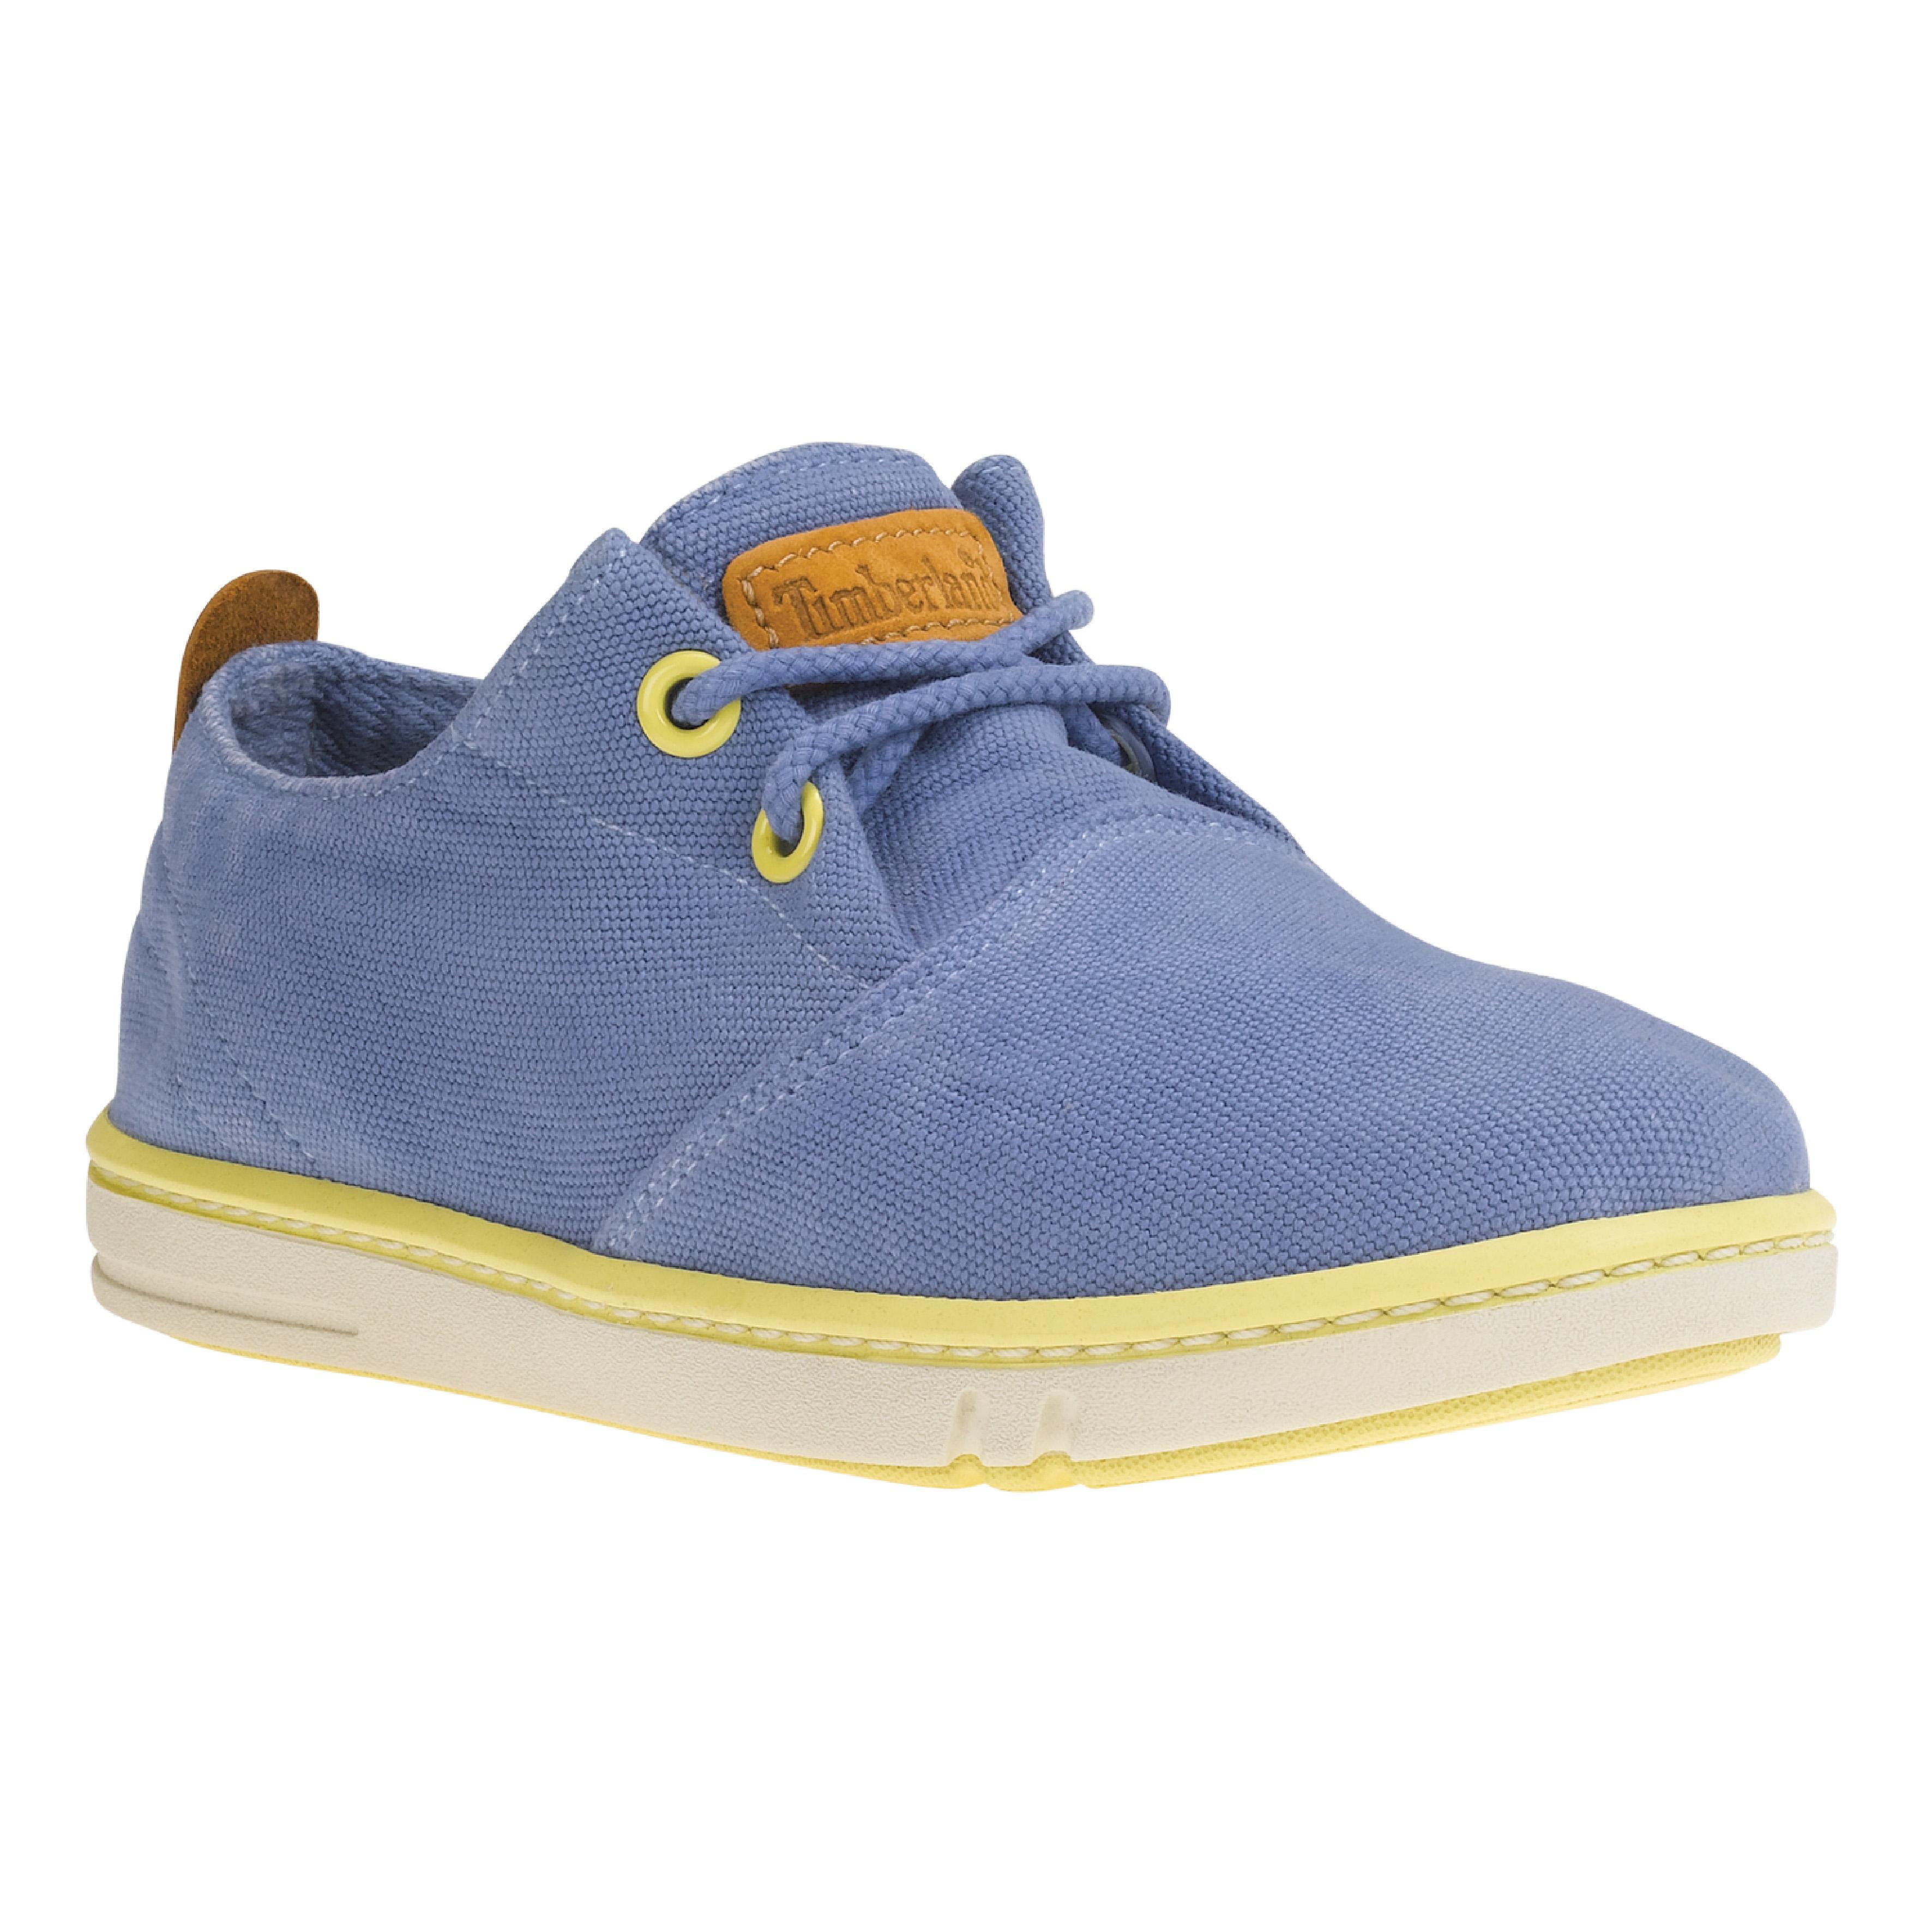 Blauwe sneakers met gele details - Timberland - € 54,95